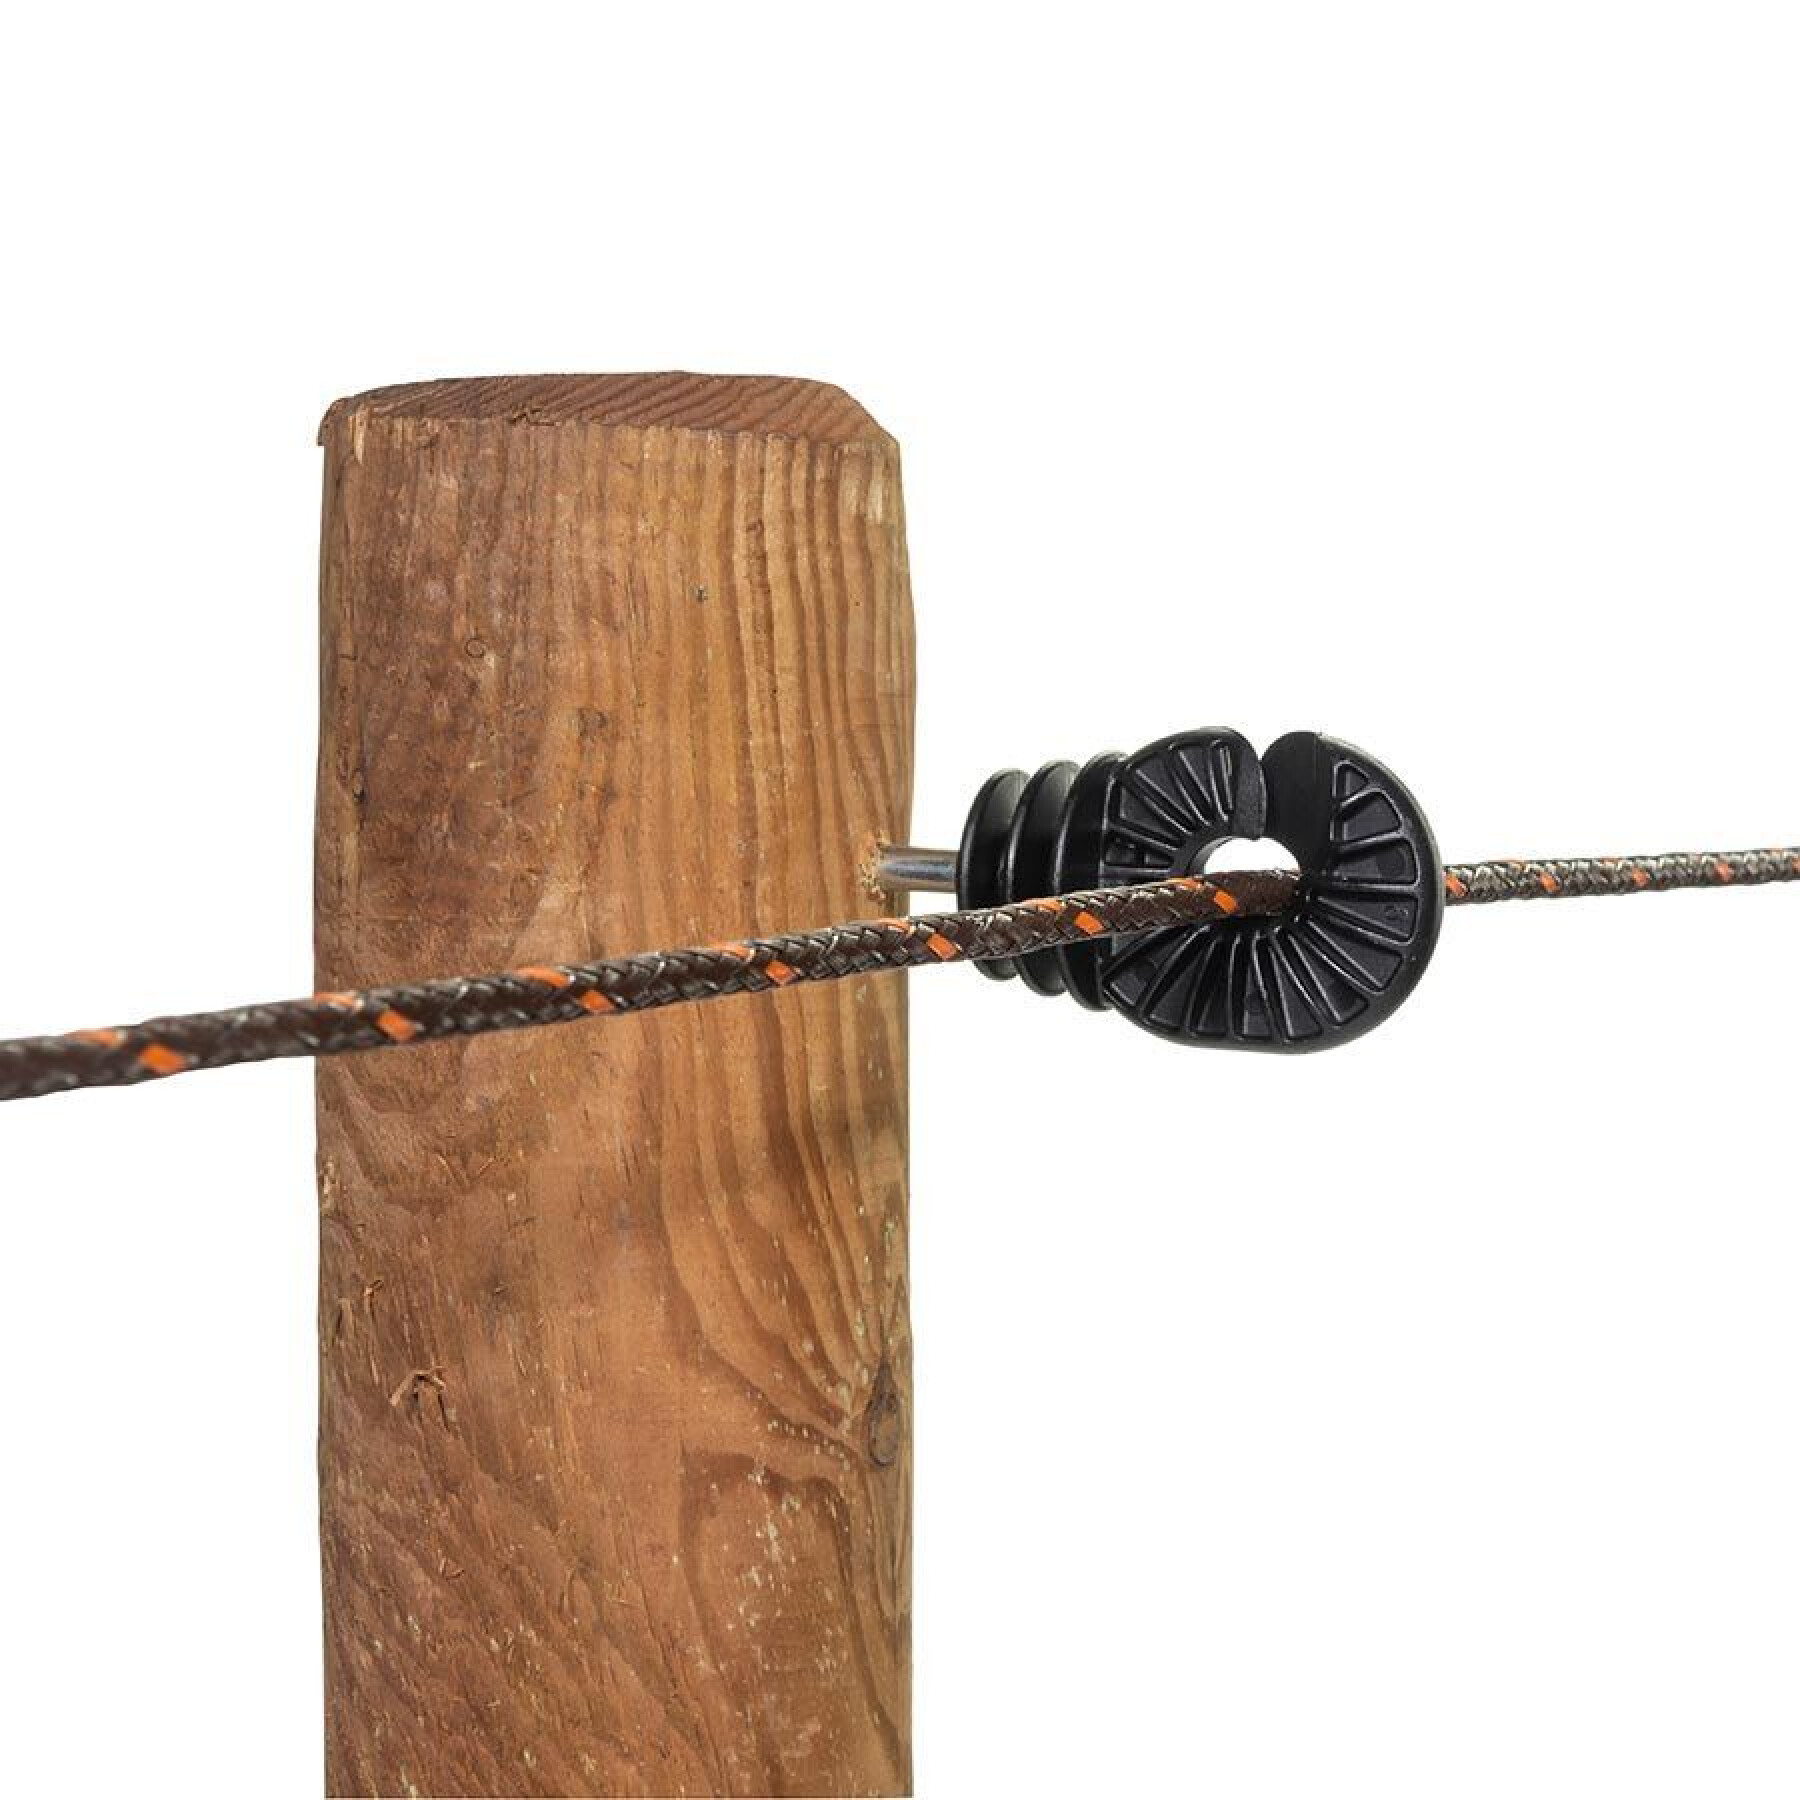 Aisladores para cercas eléctricas de tornillo bs super wood Gallagher (x100)